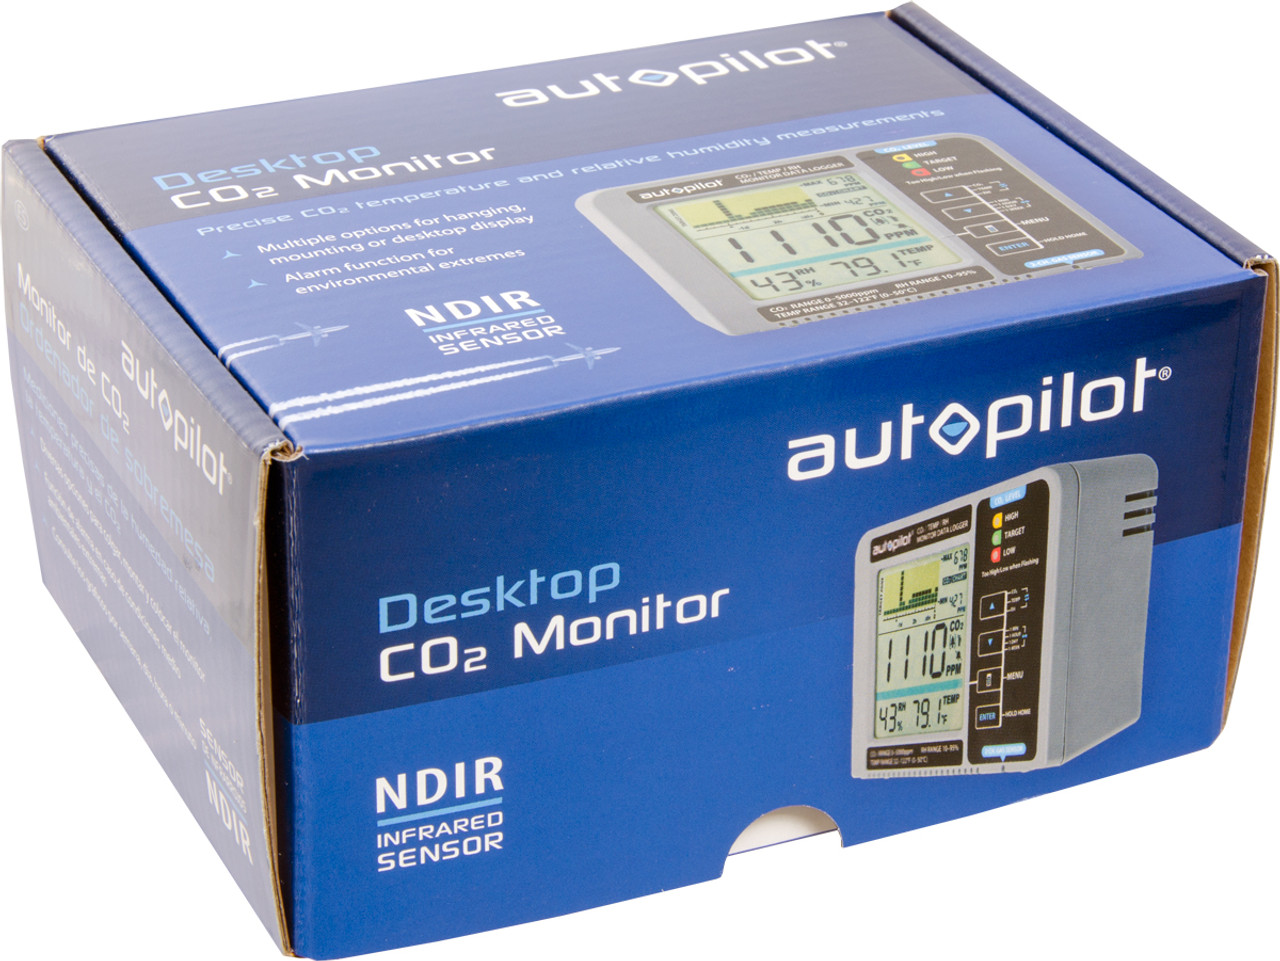 Hydroponics | Autopilot Desktop CO2 Monitor  Data Logger | CO2 Enrichment